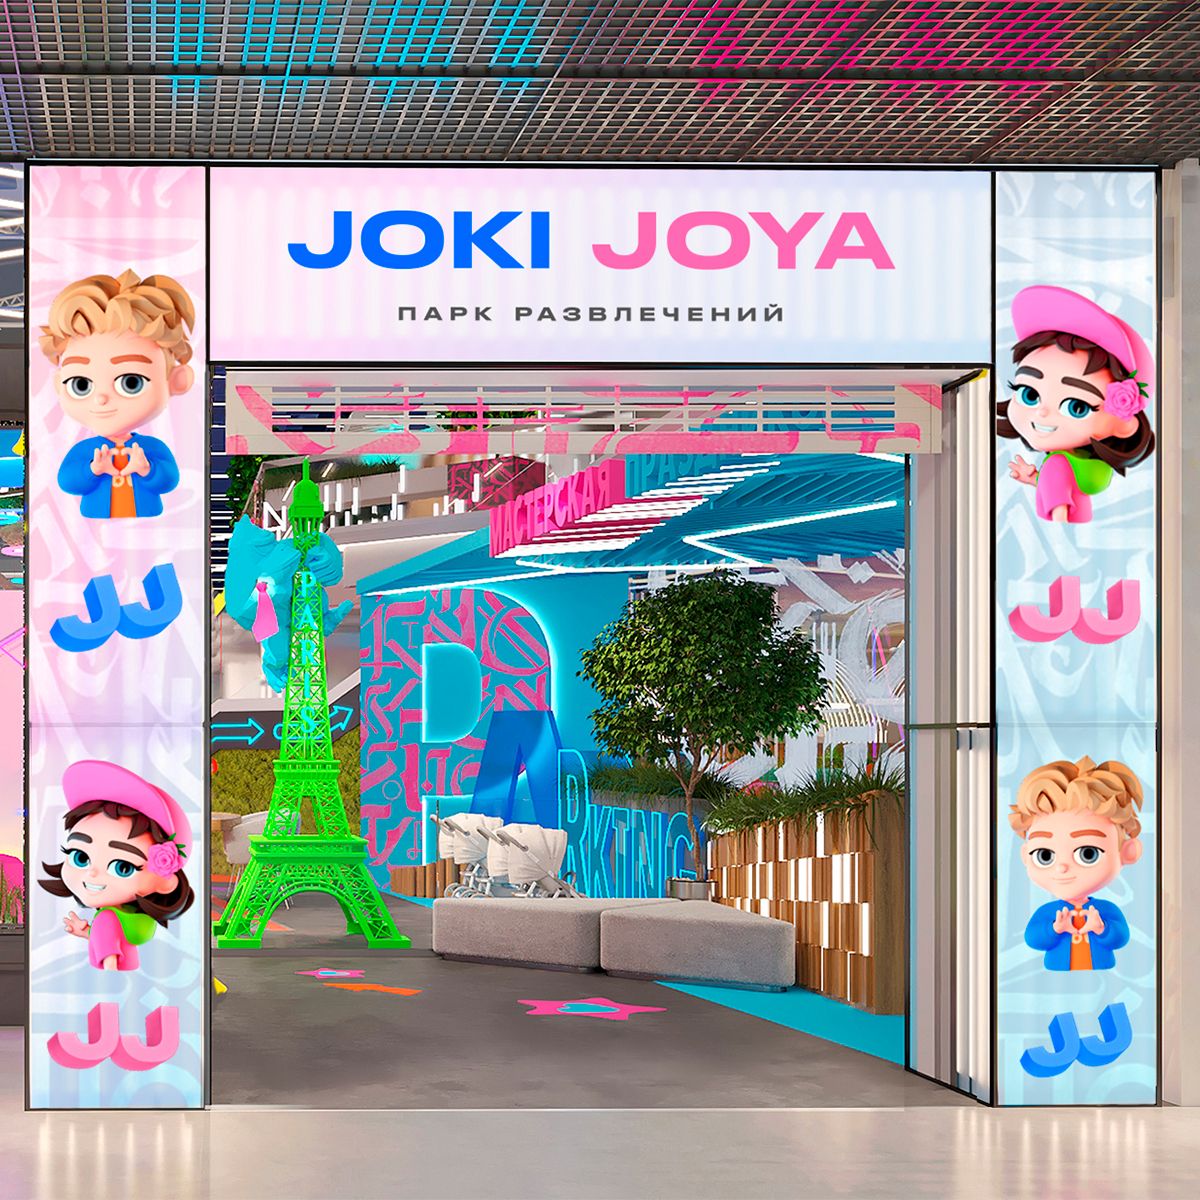 ✨ Скоро открытие самого большого парка развлечений Joki Joya в России — JJ Европейский!